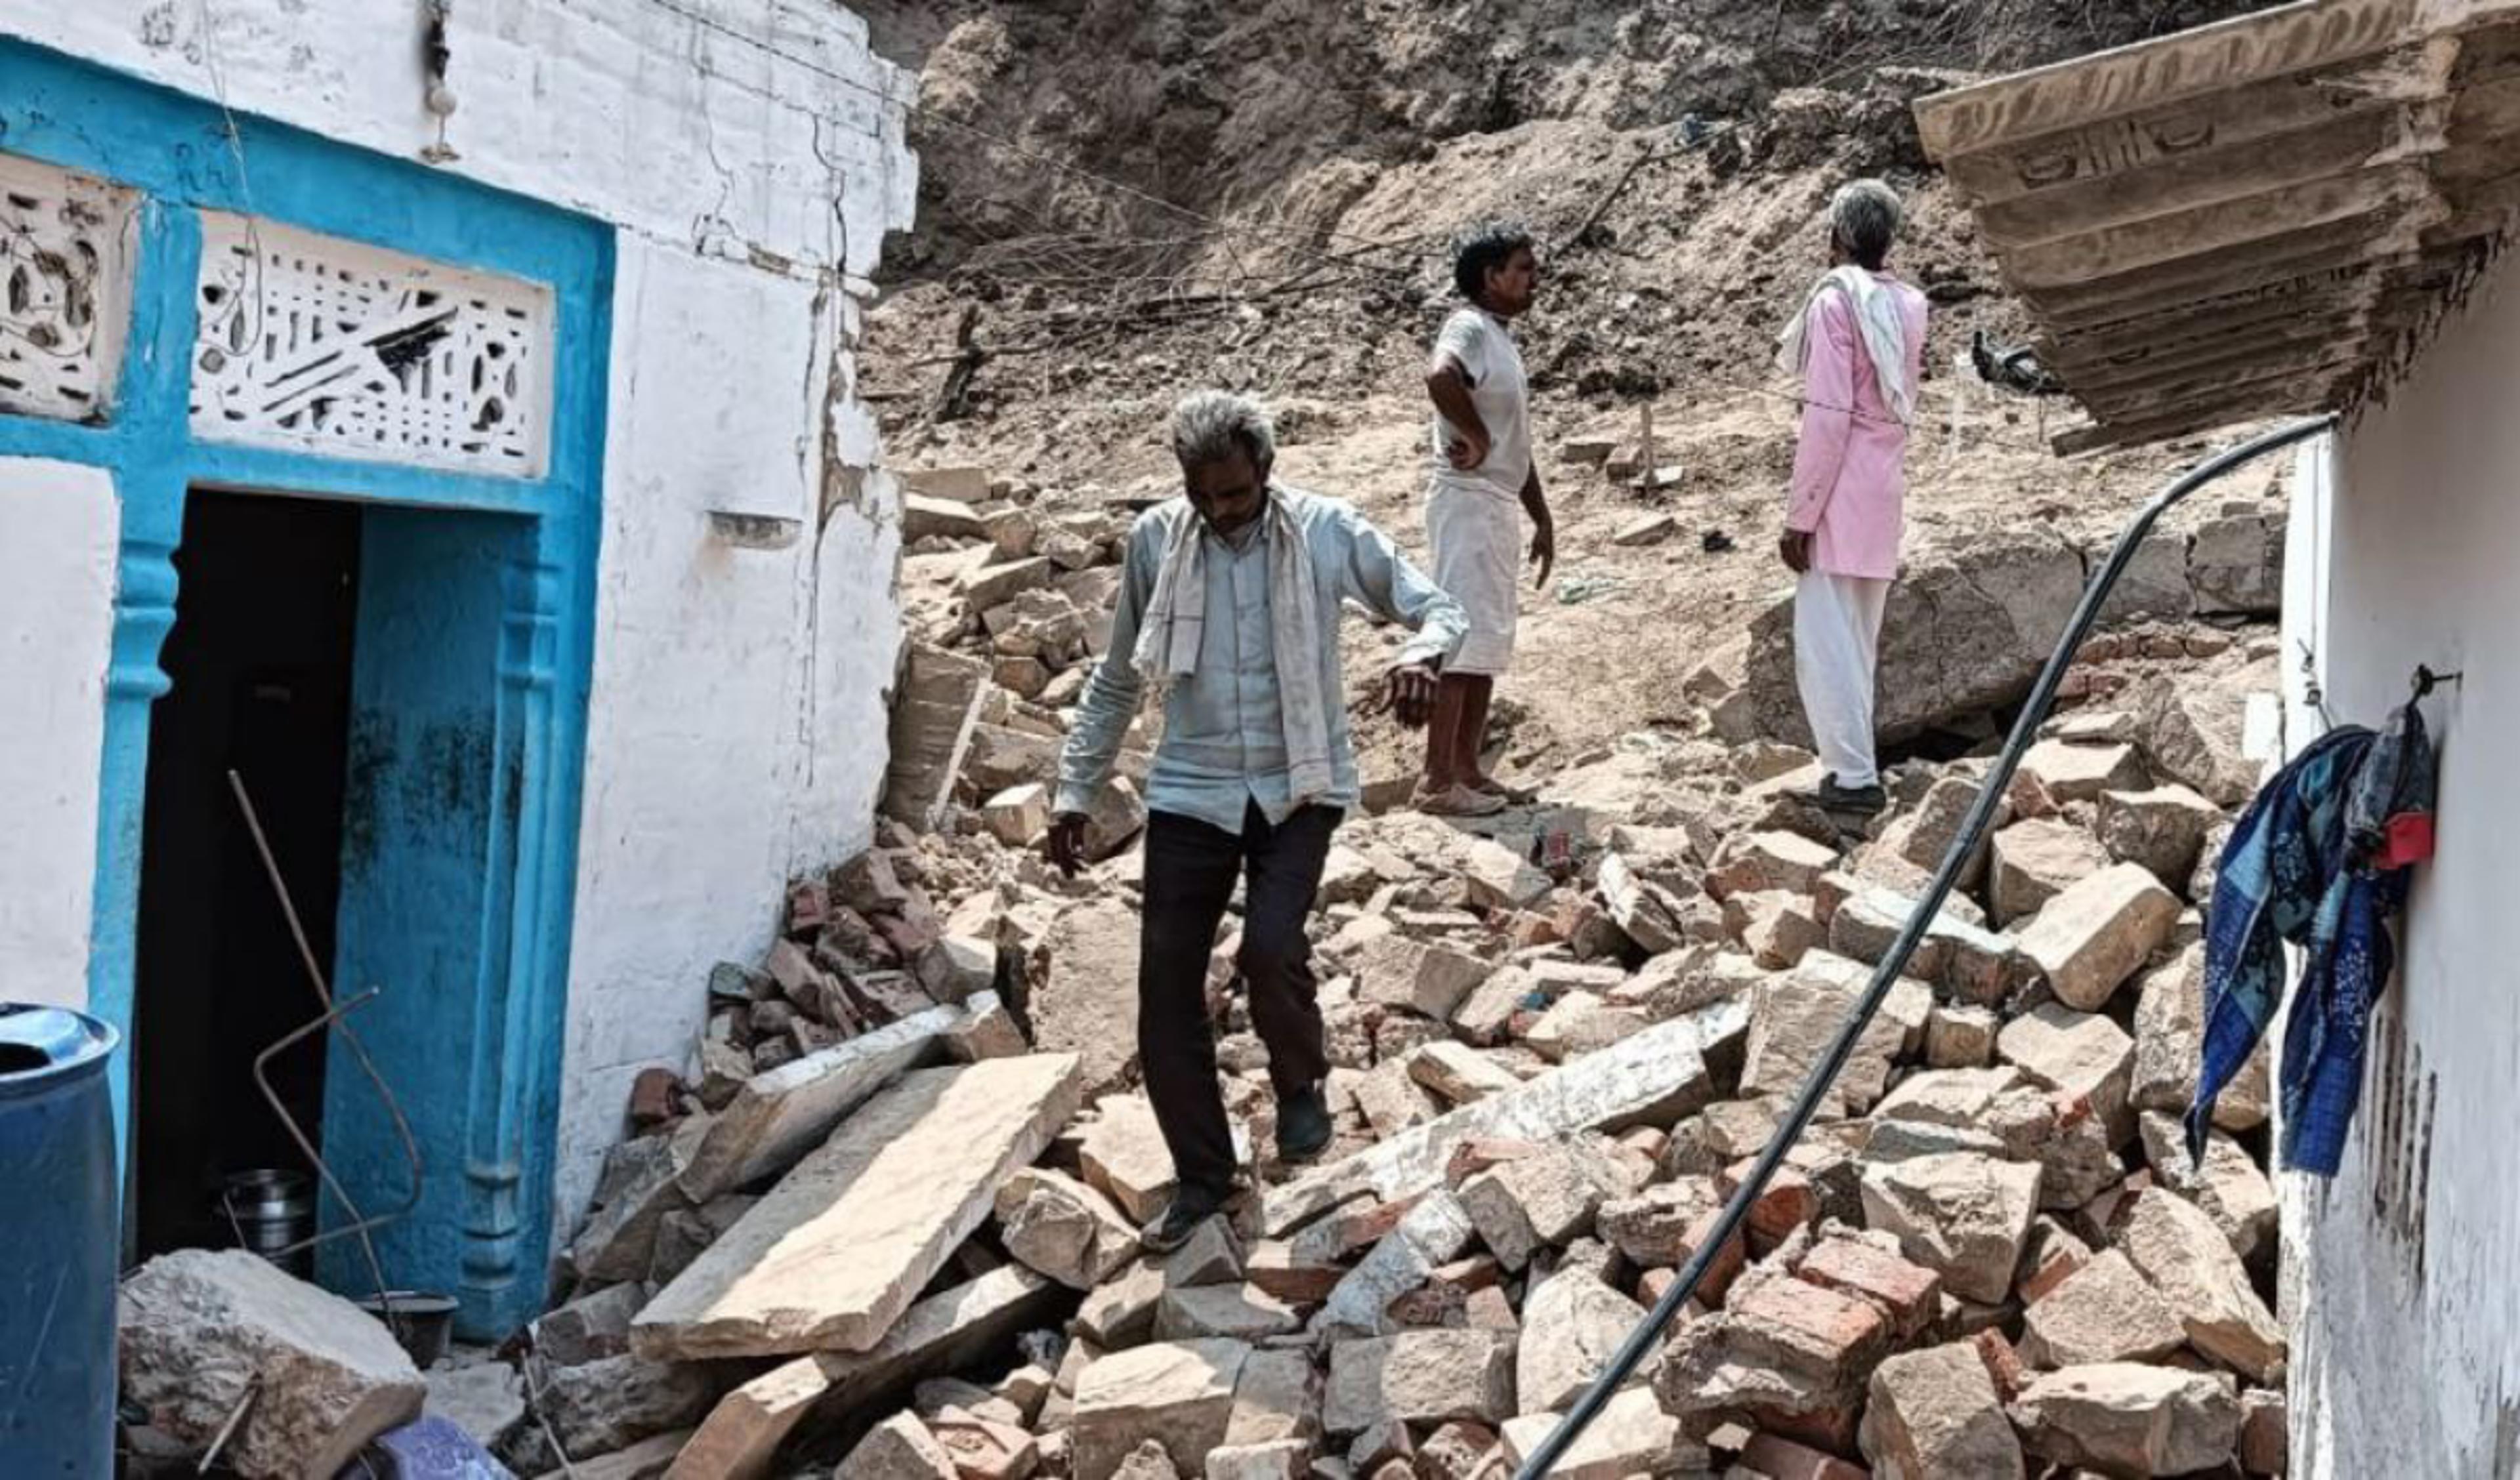 Breaking – भिंड में बड़ा हादसा, मकान ढहने से महिला- बच्चों समेत 8 लोग दबे, एक शव
निकला